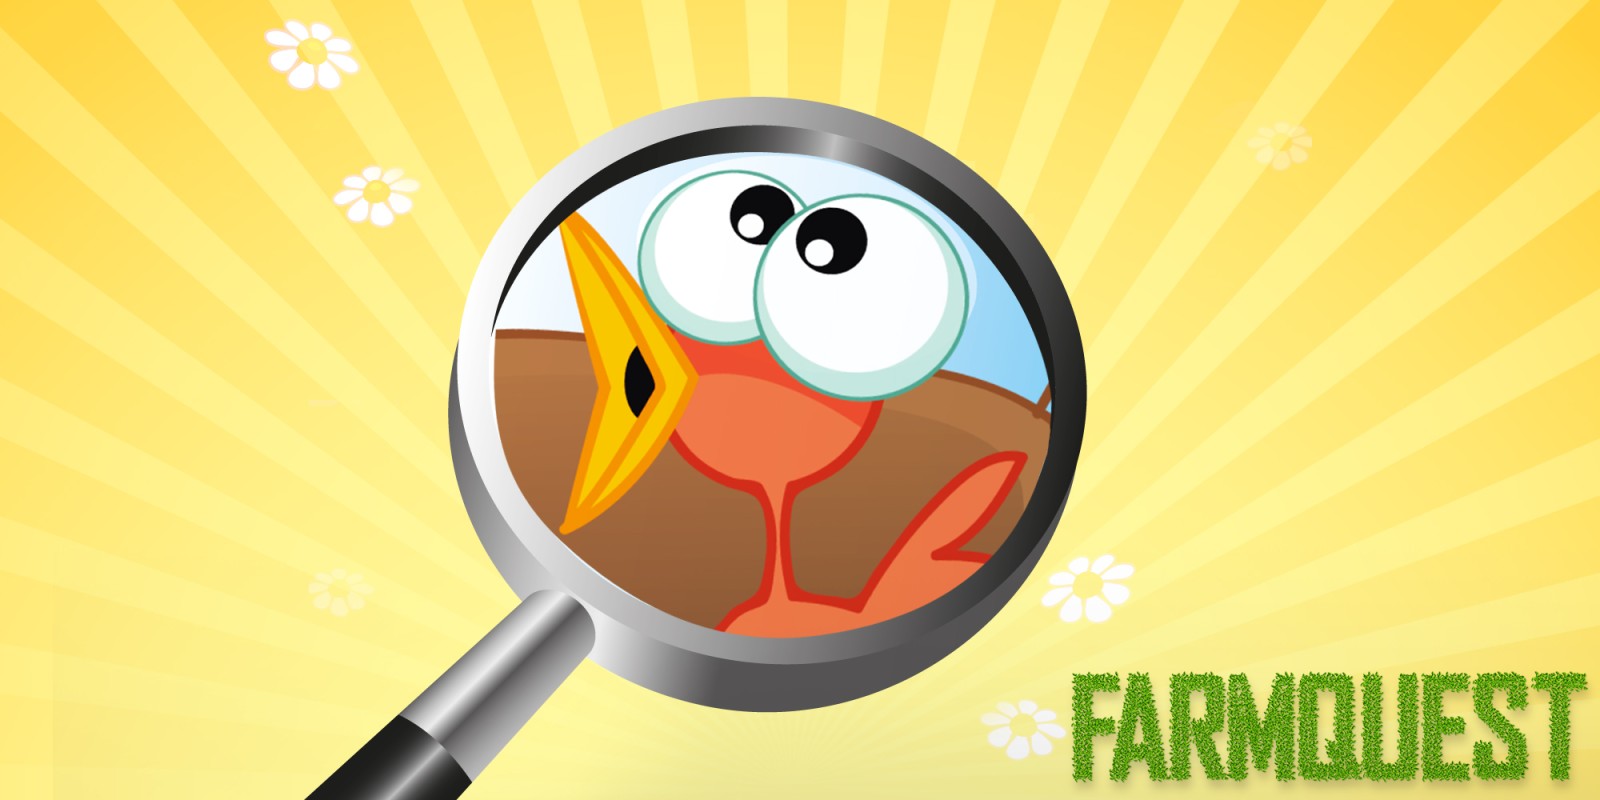 Farmquest - El juego de buscar objetos ocultos para niños